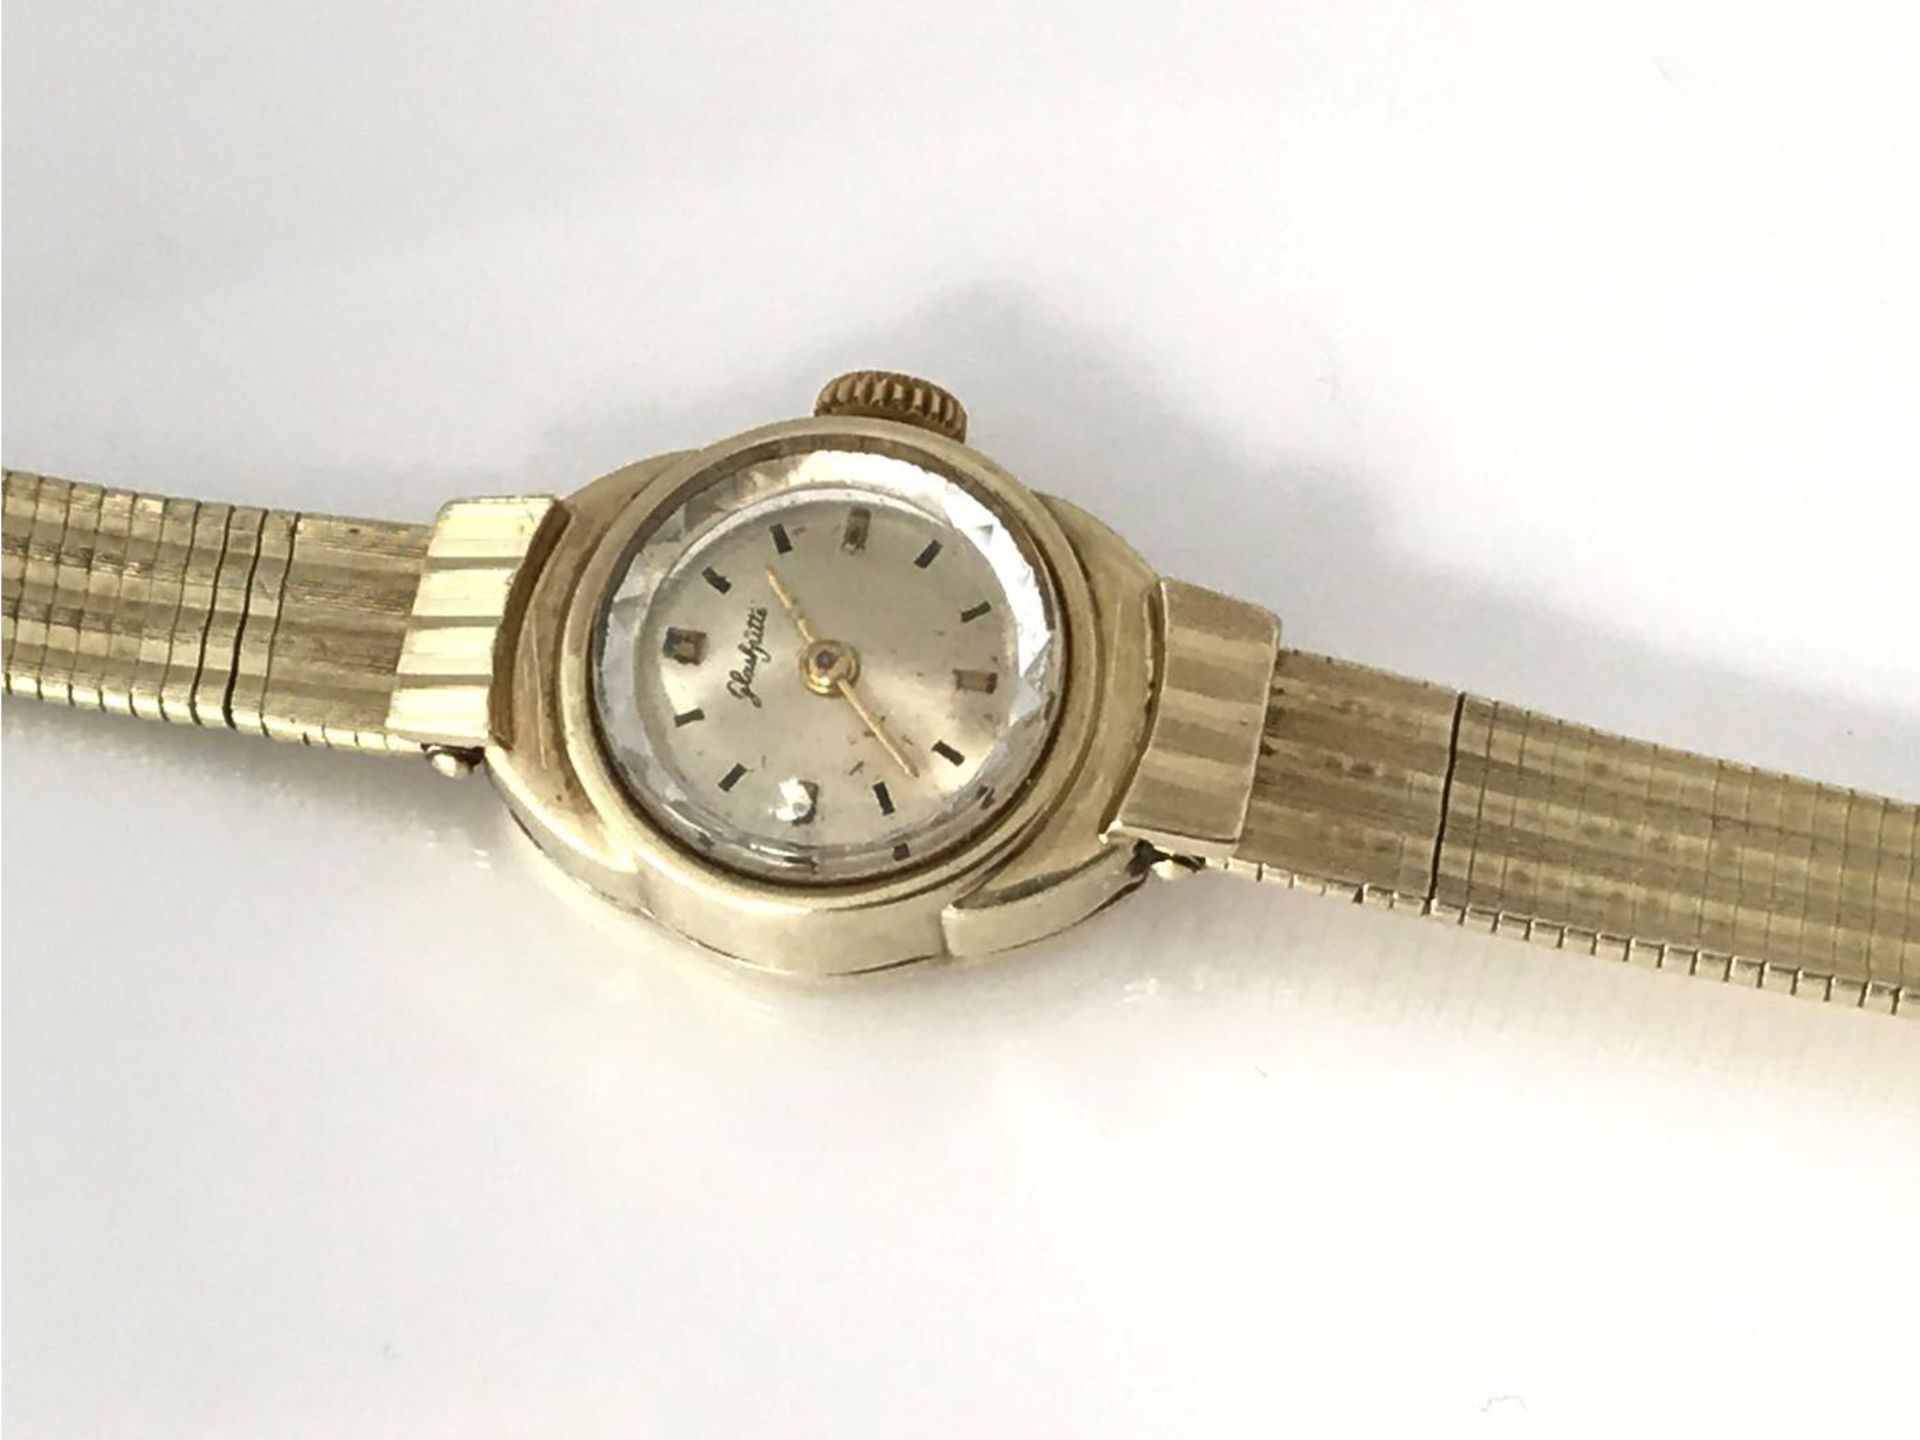 Armbanduhr: goldene Damenuhr, Glashütte, um 1950 Ca. 17cm lang, durch die flexible Schließe auf